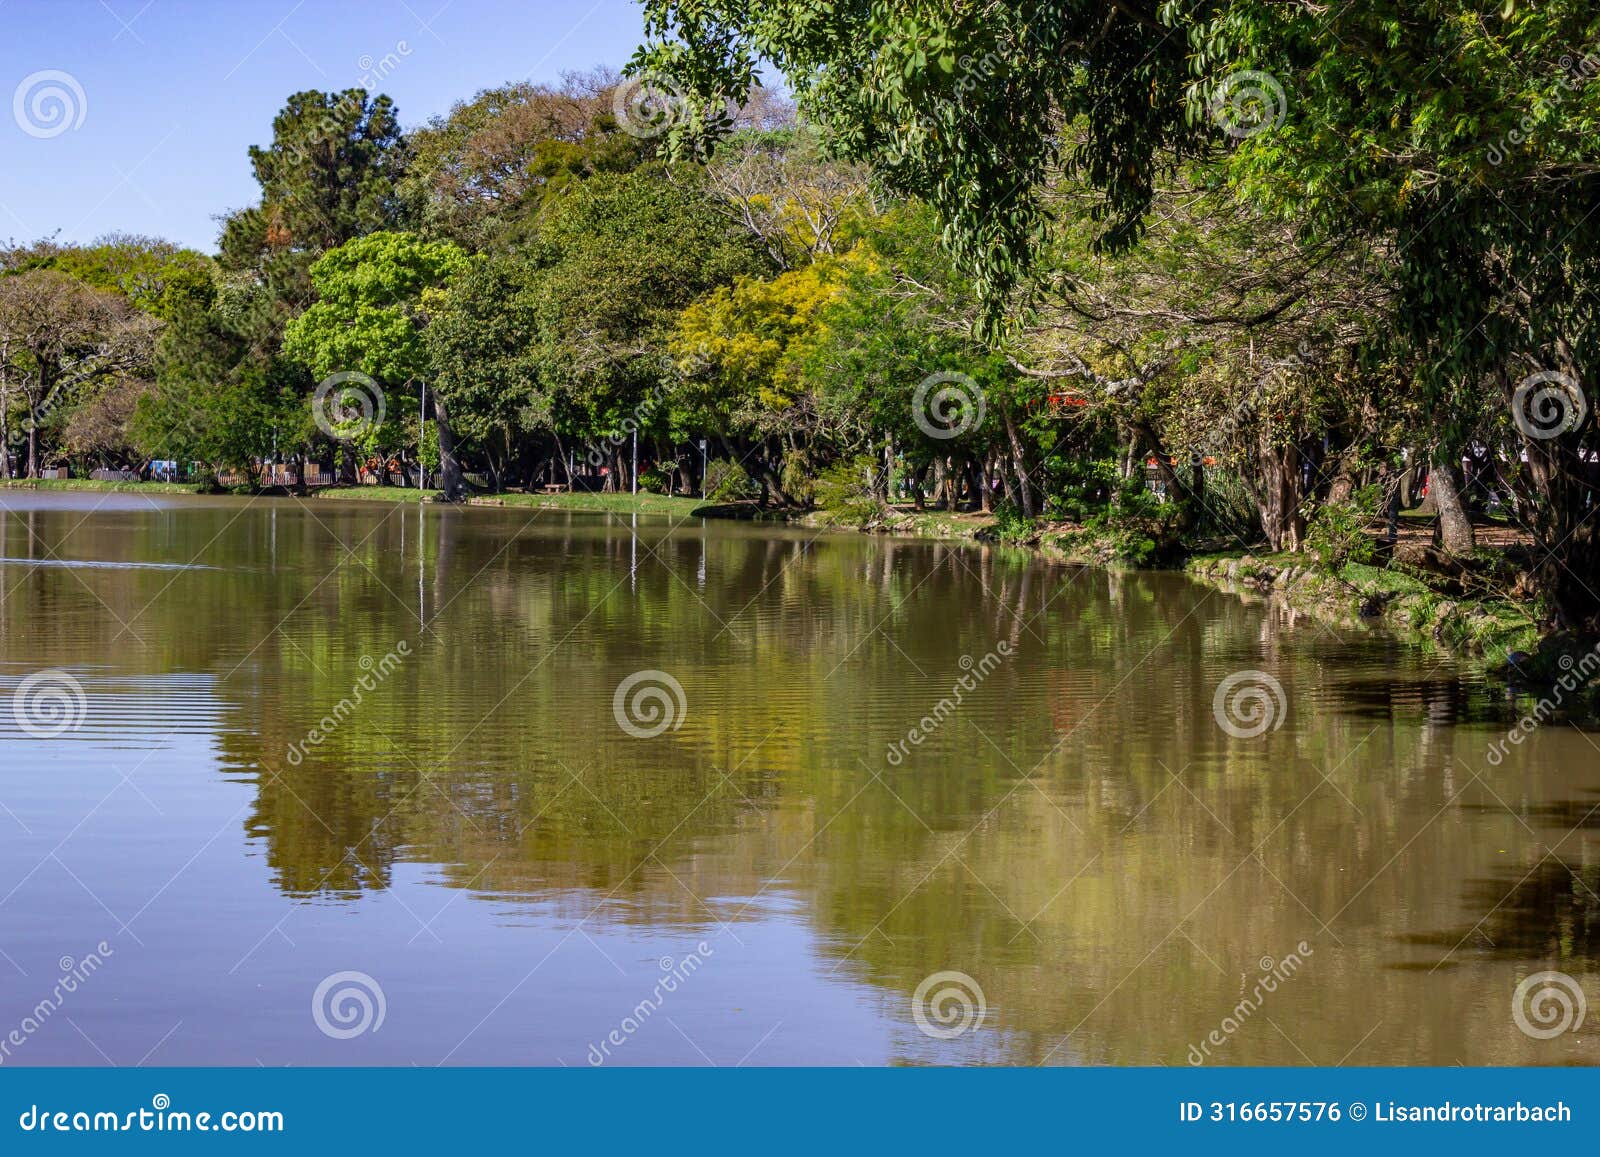 lake in redencao park